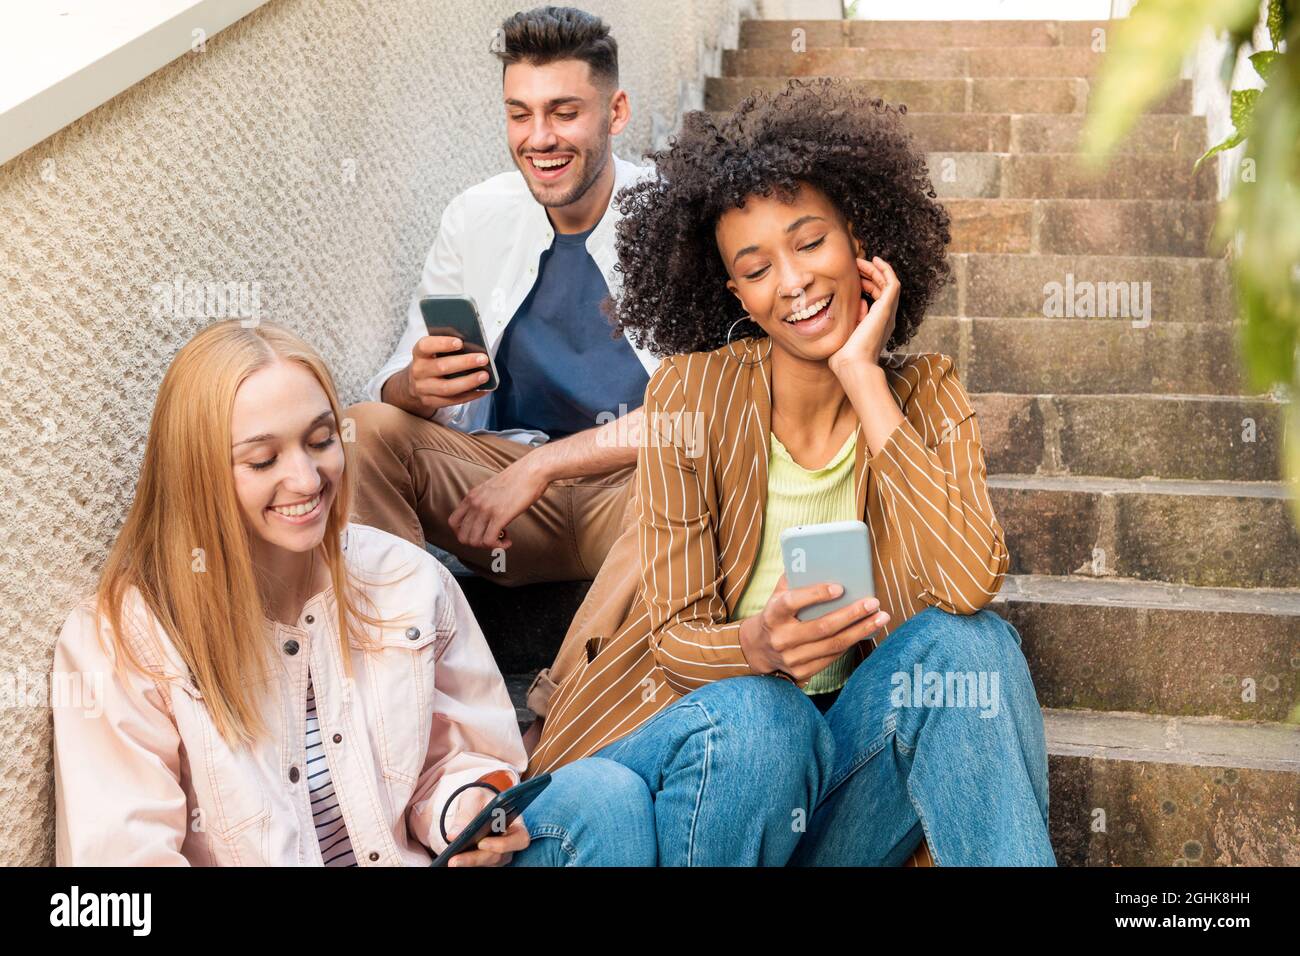 Felice uomo e donna multirazziale in abiti casual sorridendo e navigando cellulari con gioia mentre si siede sulle scale per strada Foto Stock